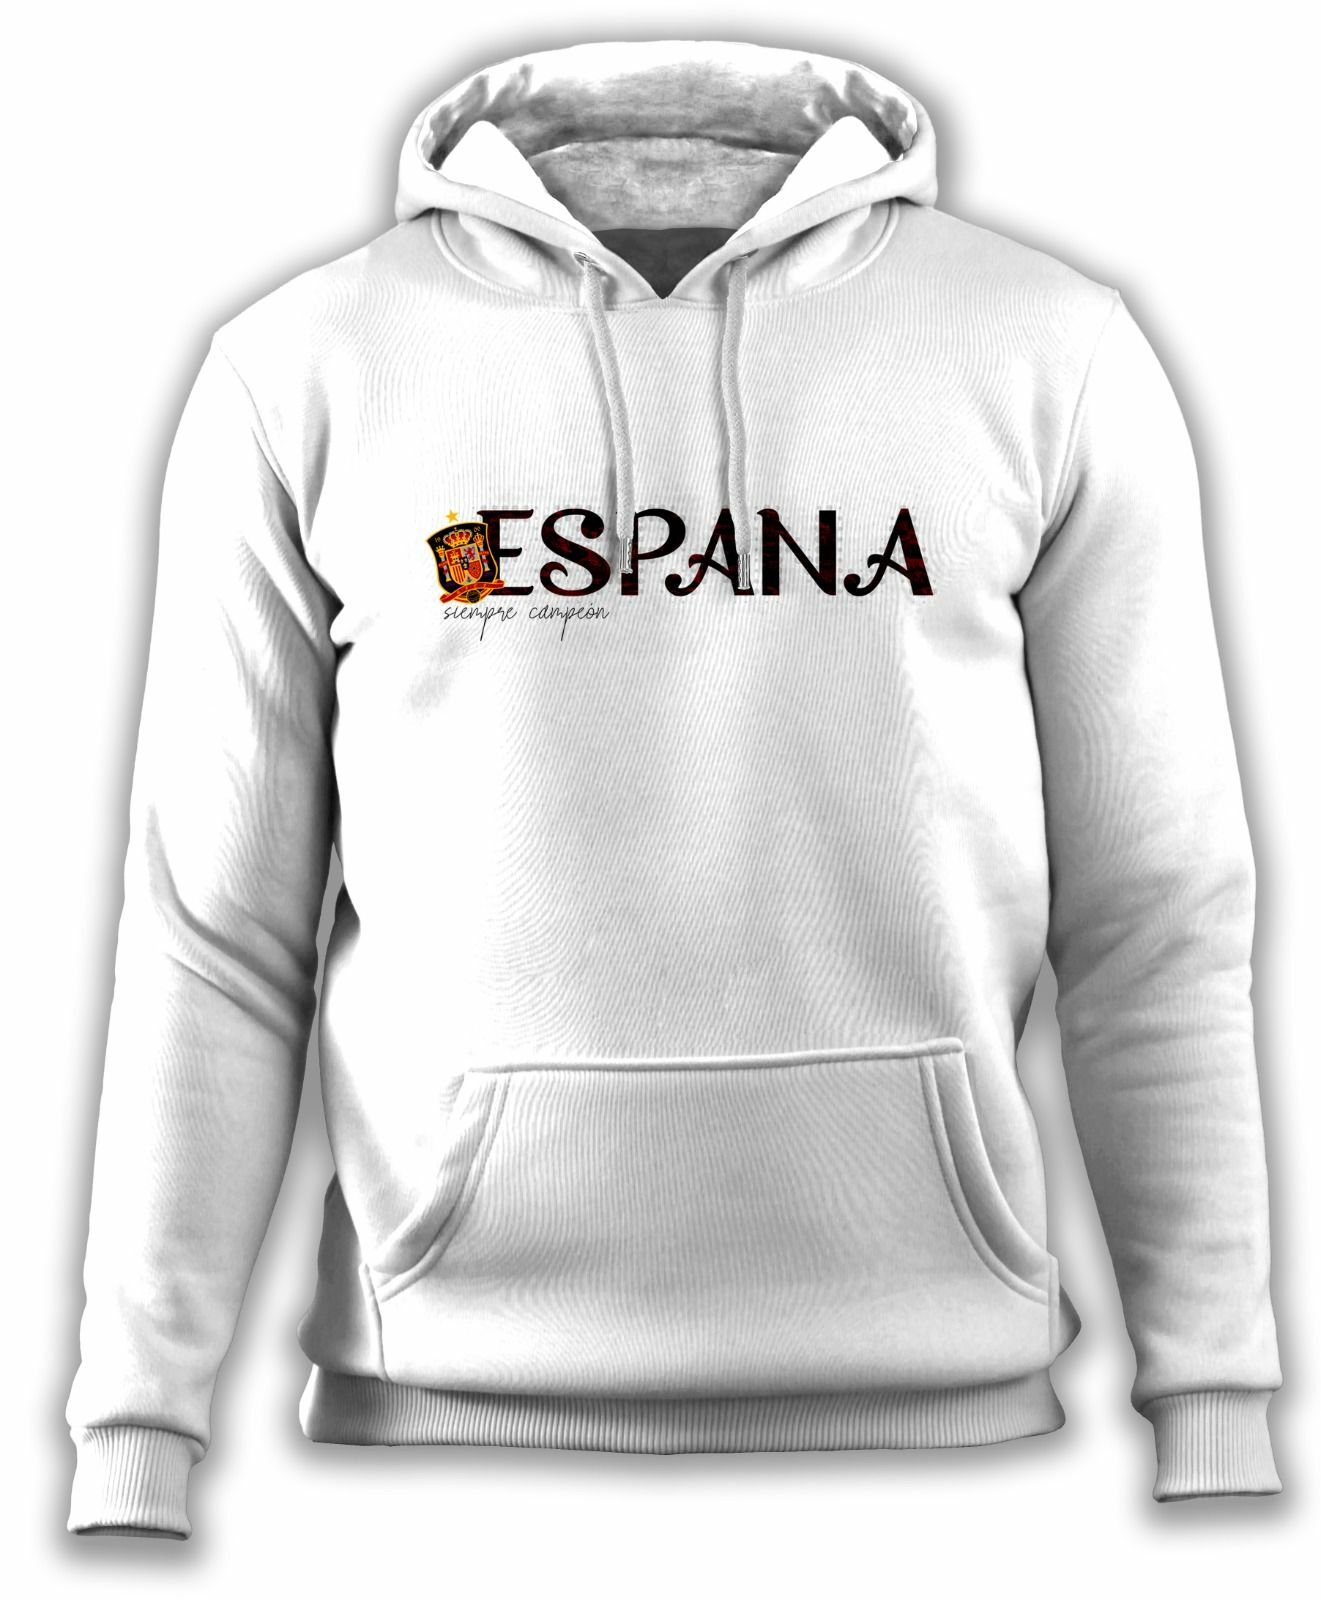 Spain (İspanya) 'Espana II' Sweatshirt